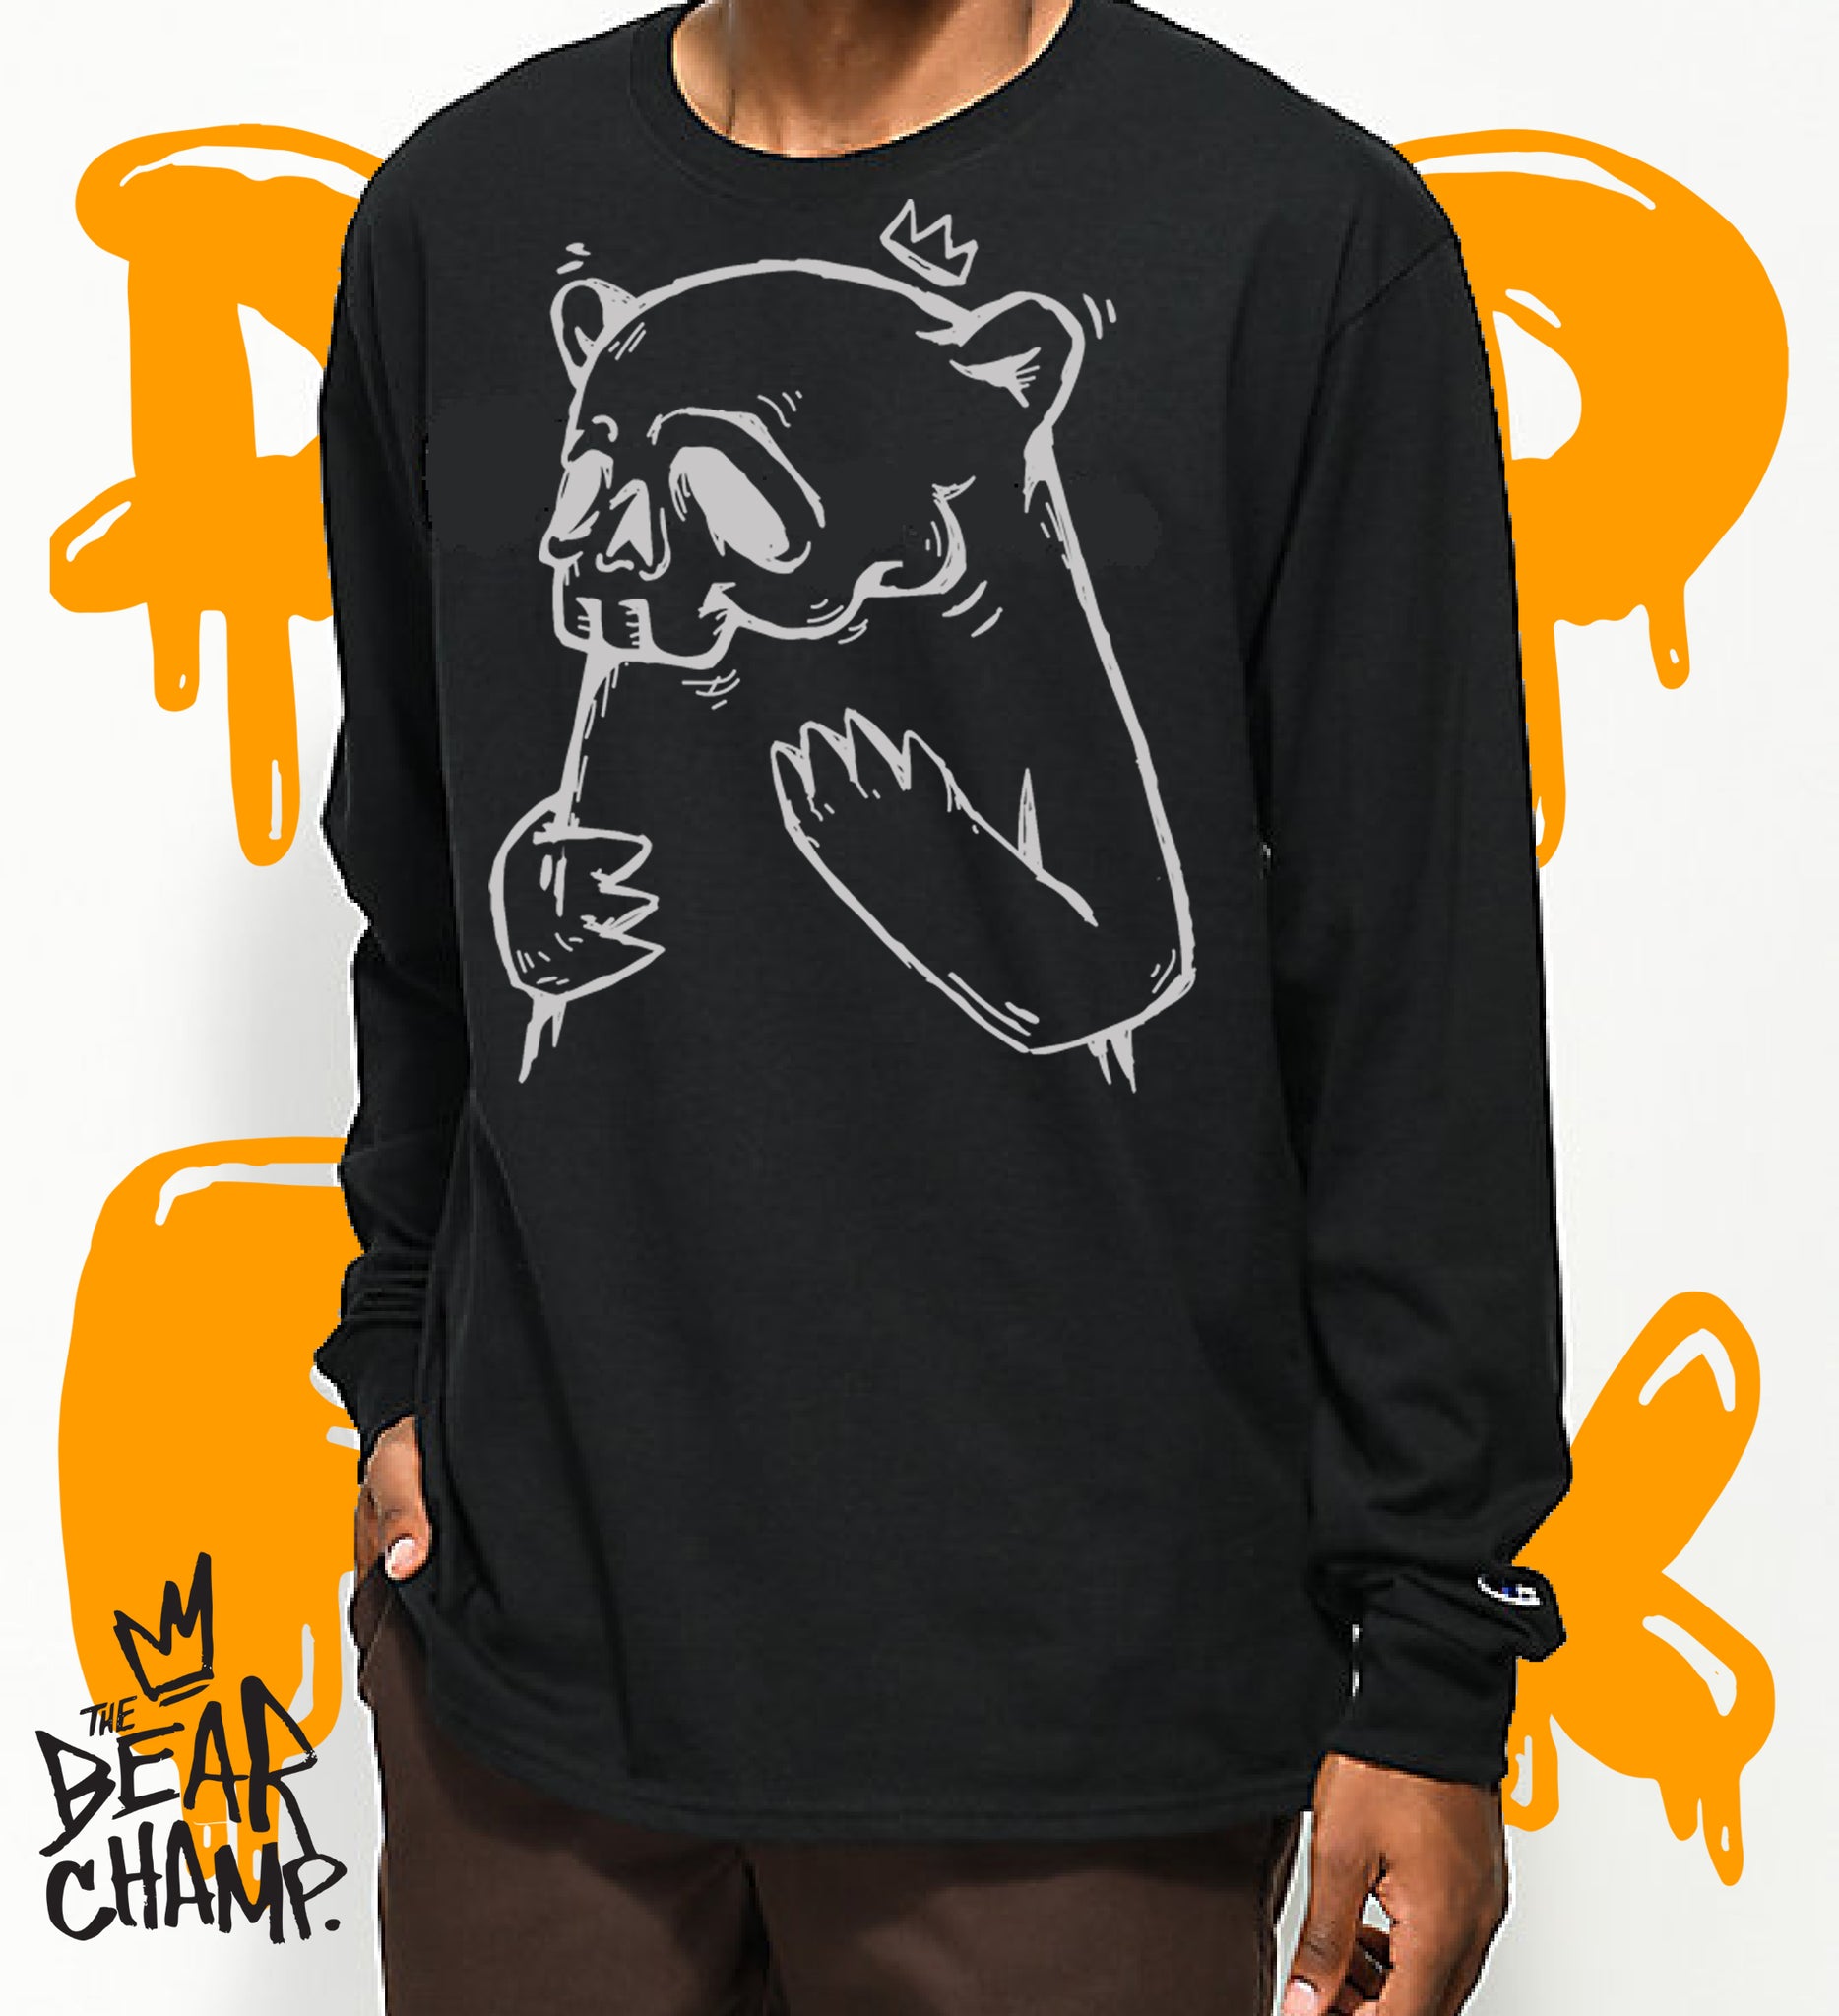 Grateful Dead Grizz Bear T Shirt - Long Sleeve T Shirt, Sweatshirt